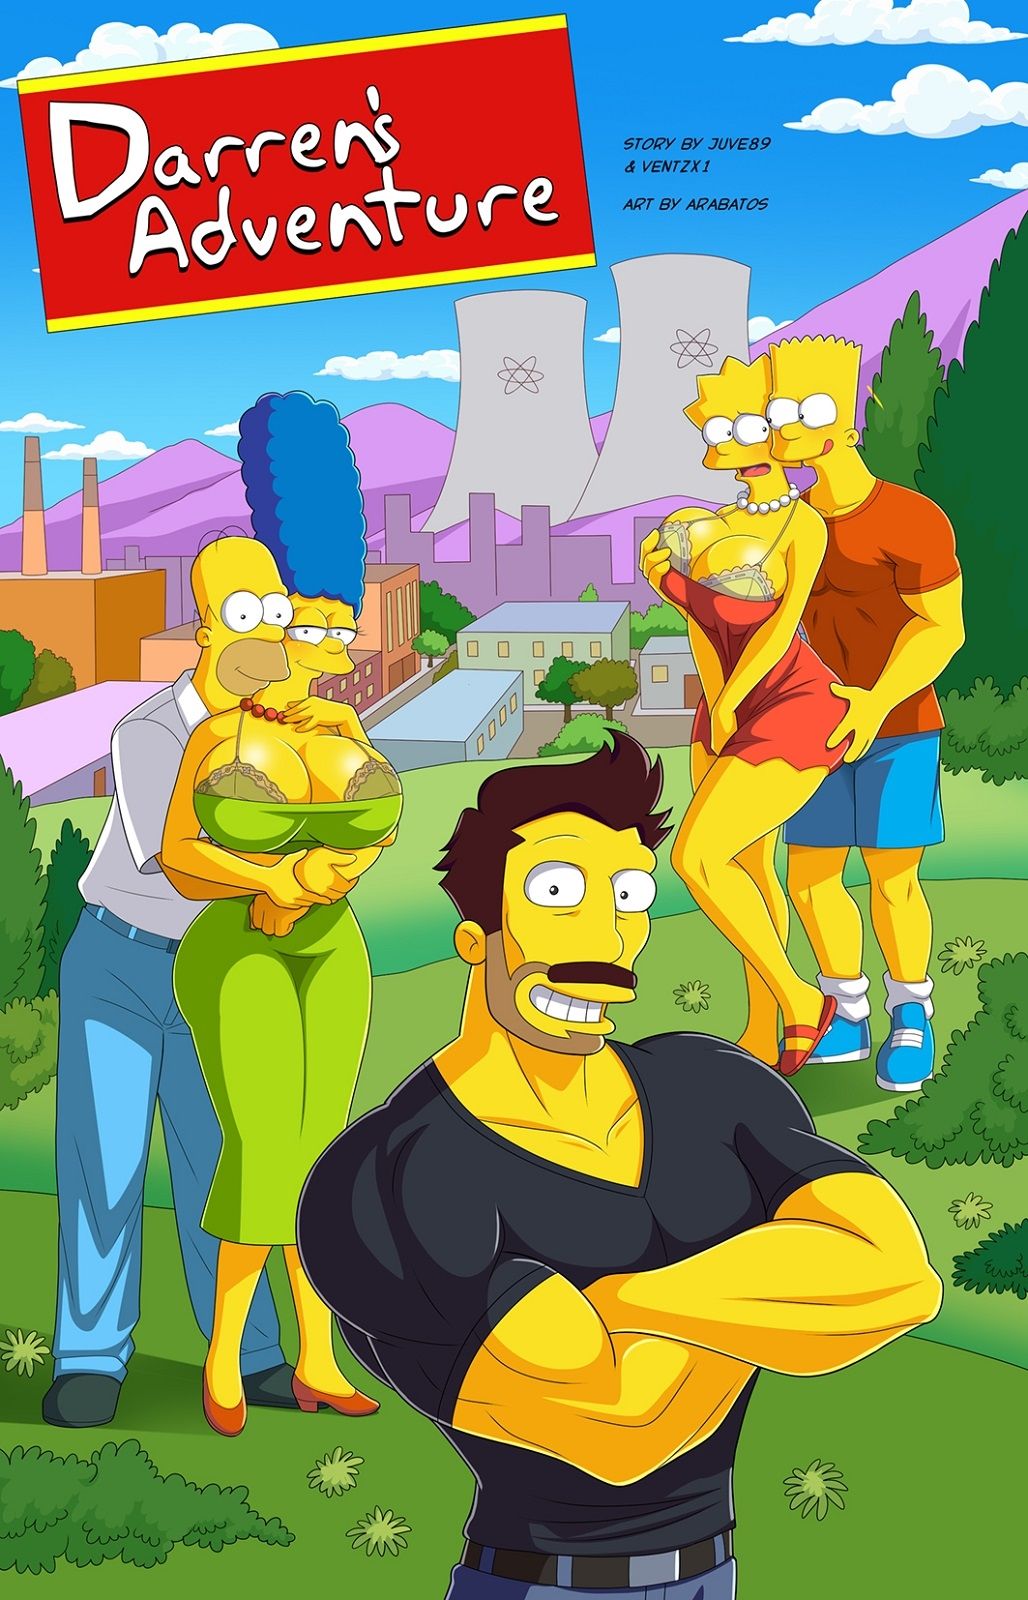 Bart simpson cartoon ass porn